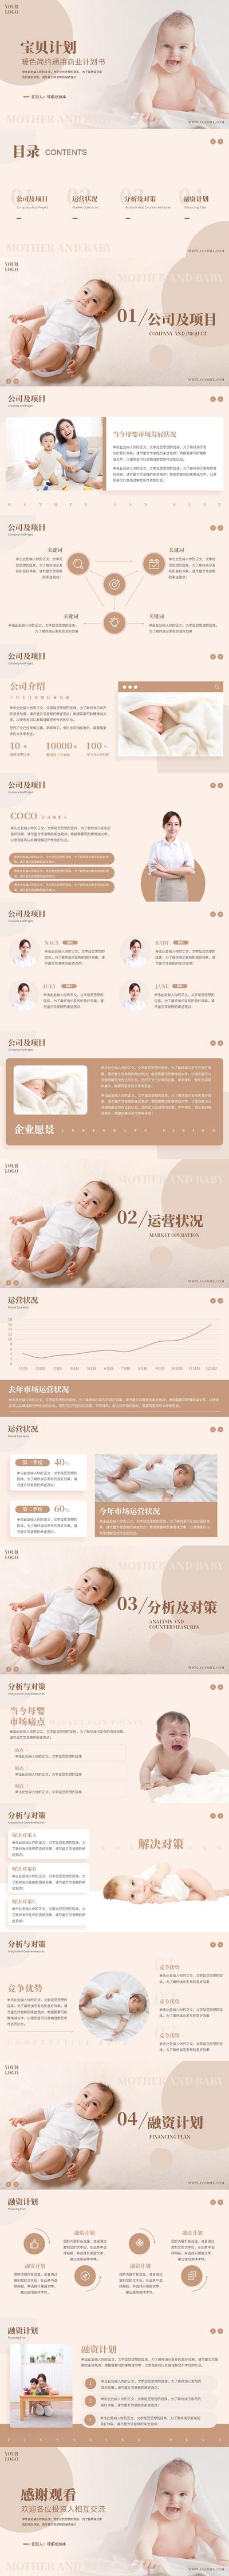 南门网 PPT 母婴 商业 计划书 营销 活动 方案 宝贝 暖色 简约